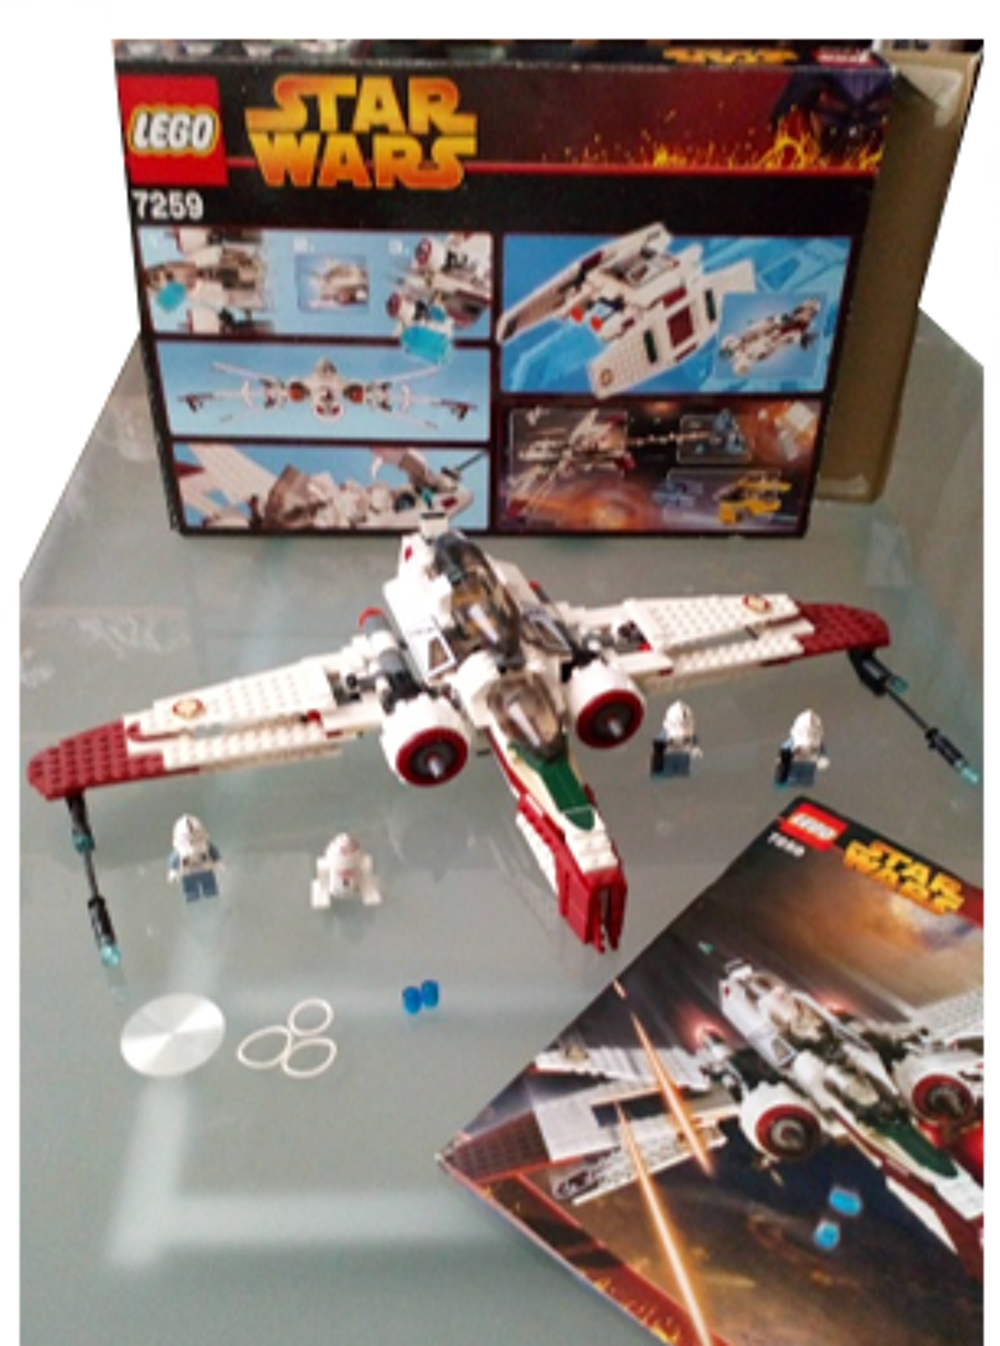 Lego Star Wars 7259 Jeux / jouets